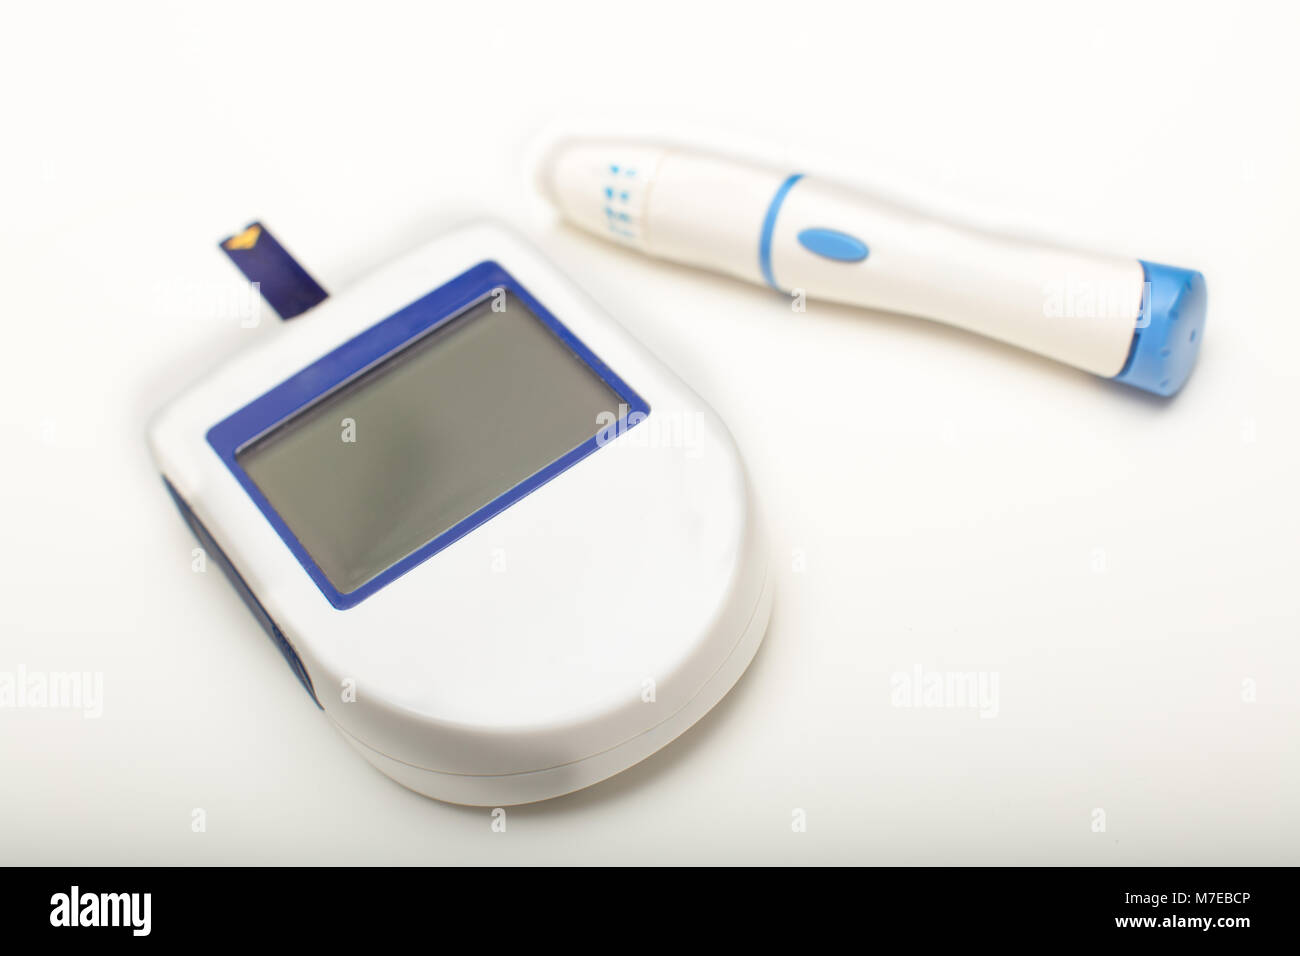 Glucomètre portable avec écran vide pour lire les niveaux de sucre dans le sang avec une lancette pour piquer un bout de doigt pour dessiner un échantillon de sang Banque D'Images